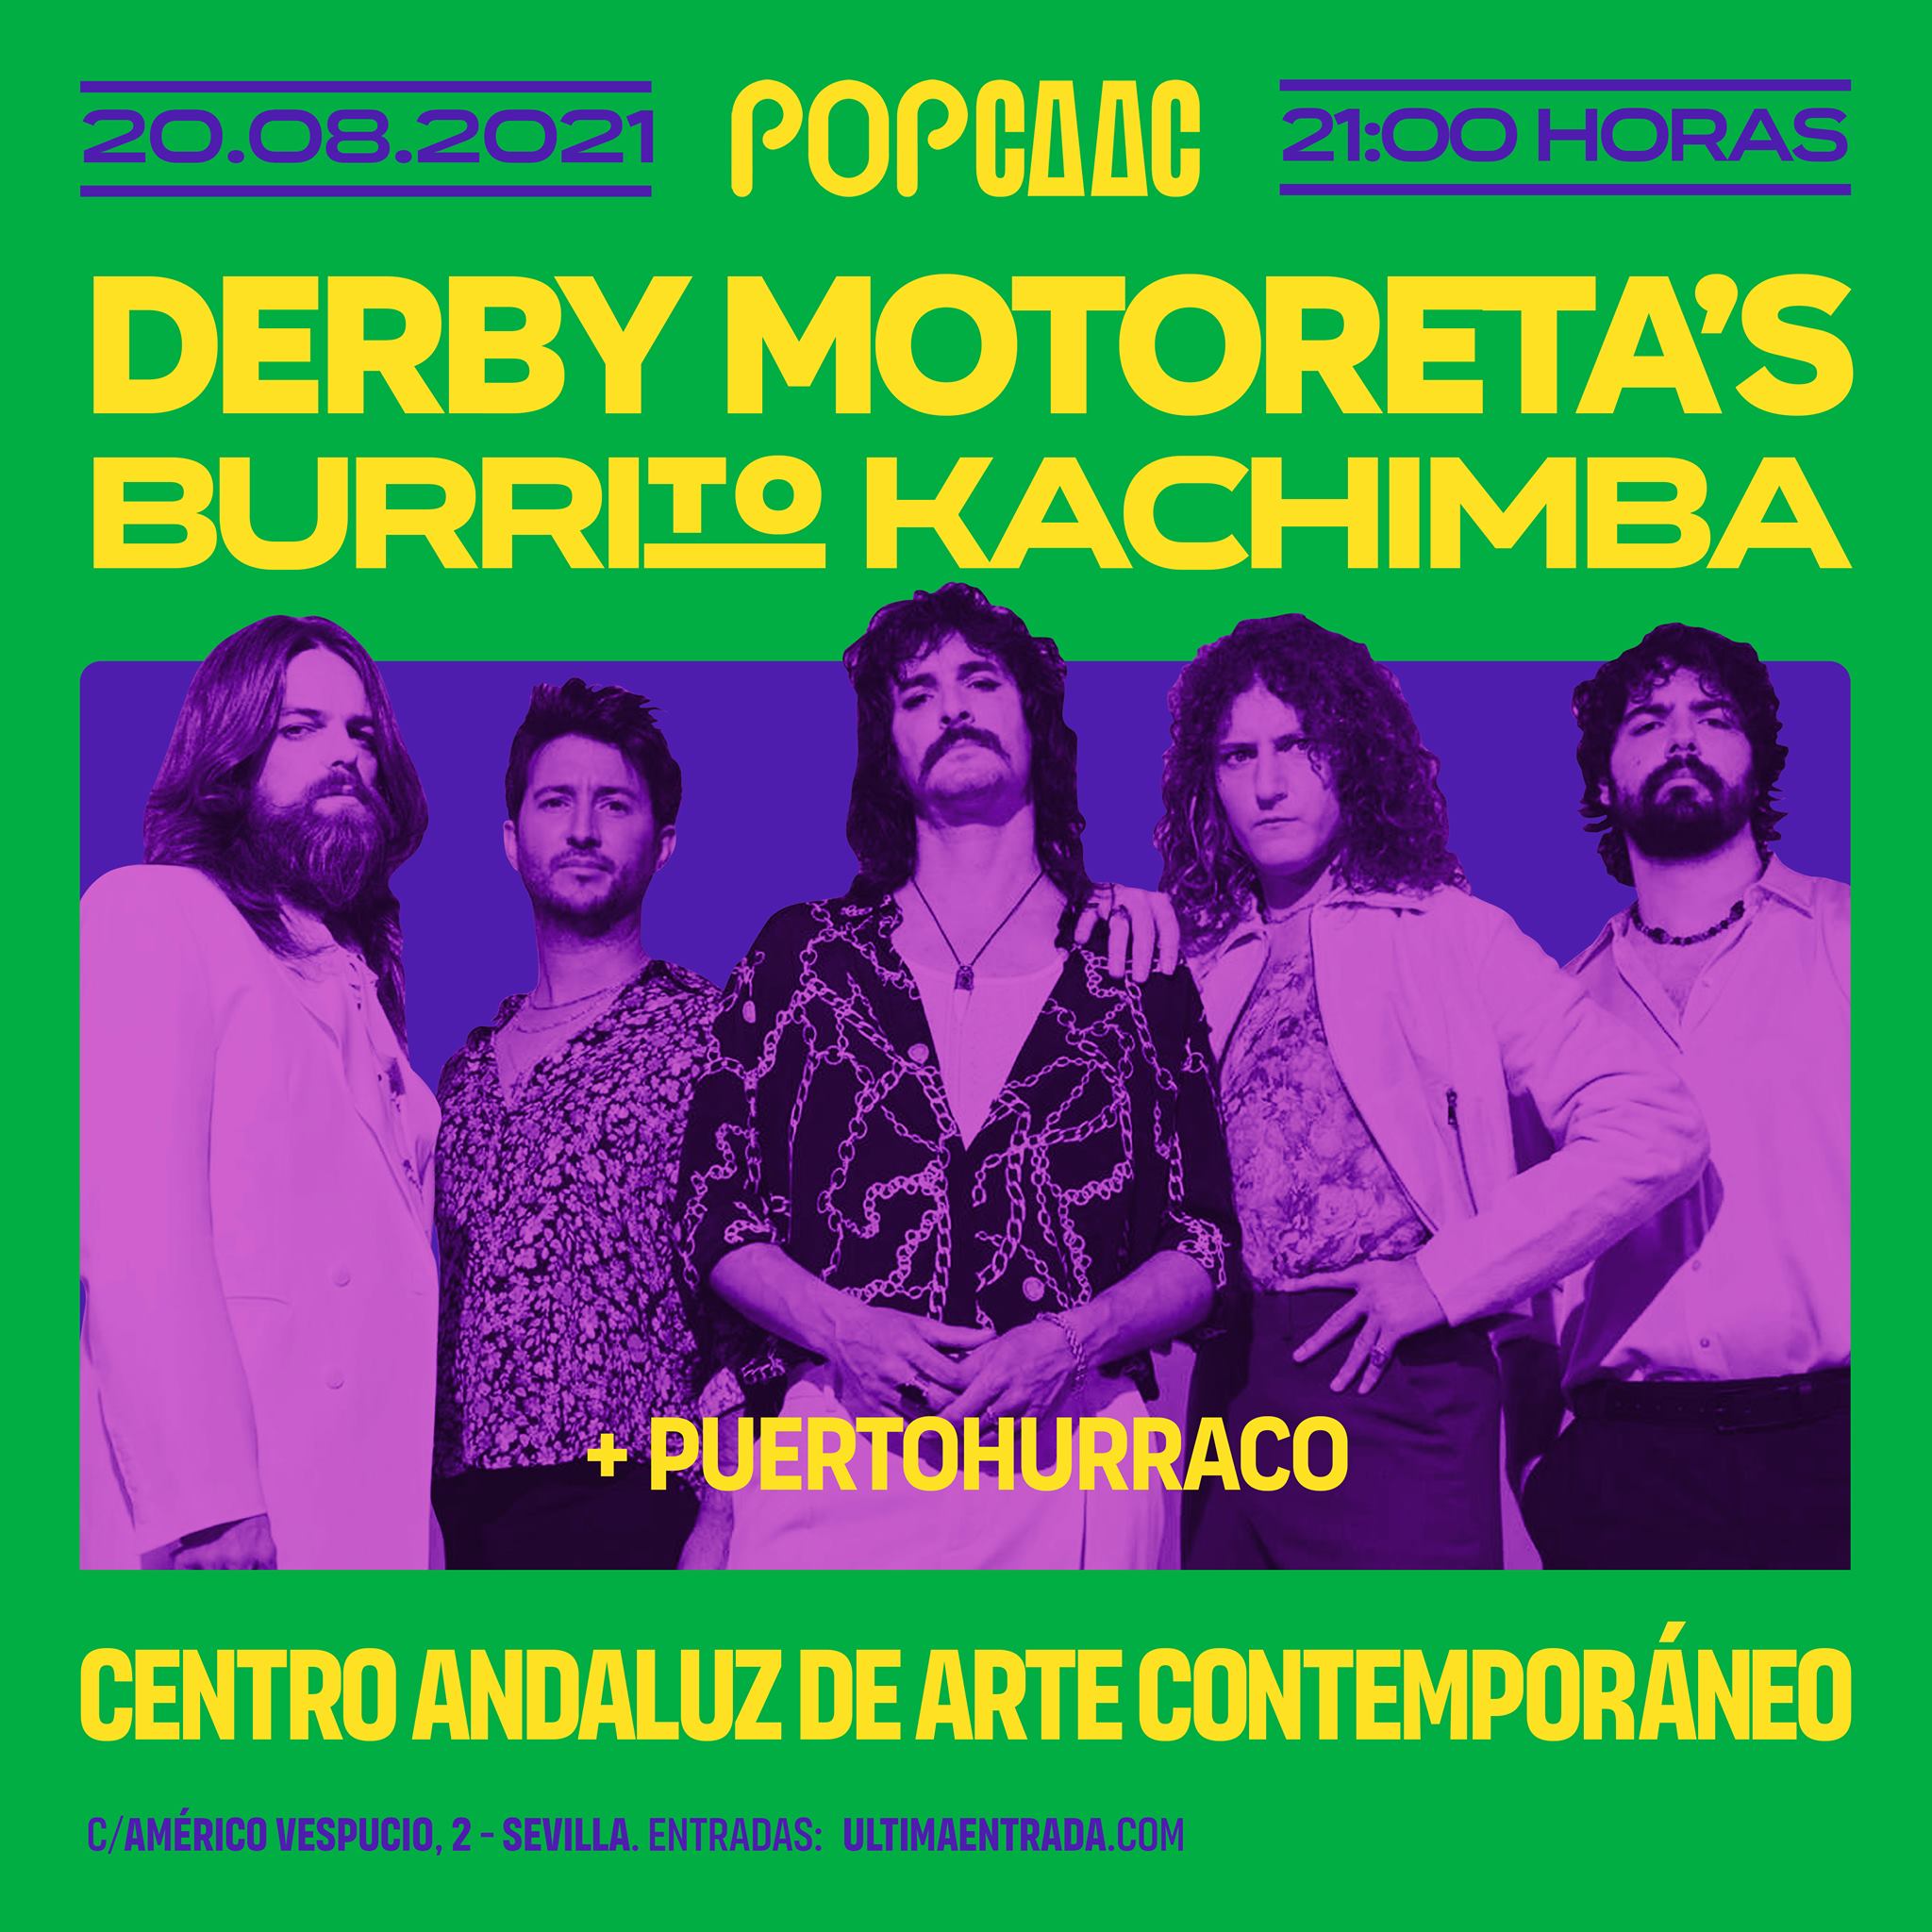 DERBY MOTORETA’S BURRITO KACHIMBA + PUERTOHURRACO - POP CAAC 2021